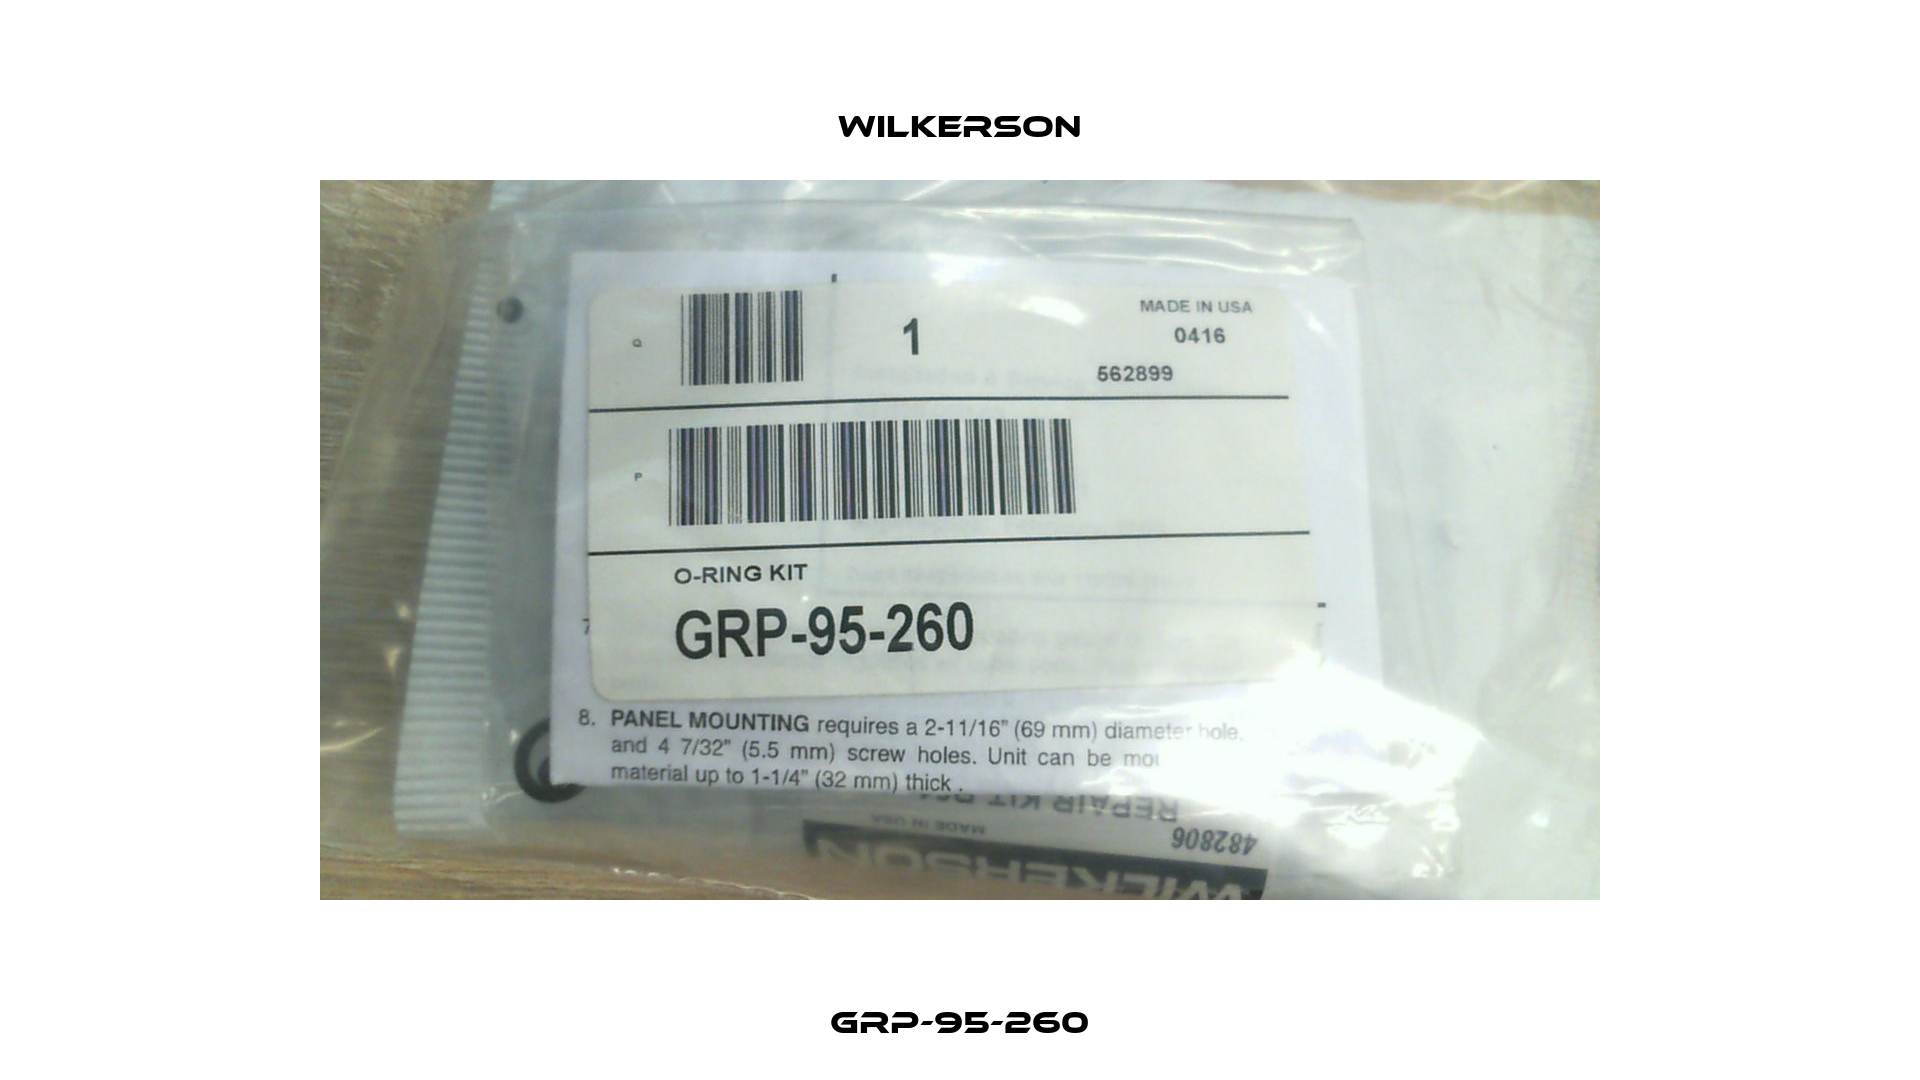 GRP-95-260 Wilkerson